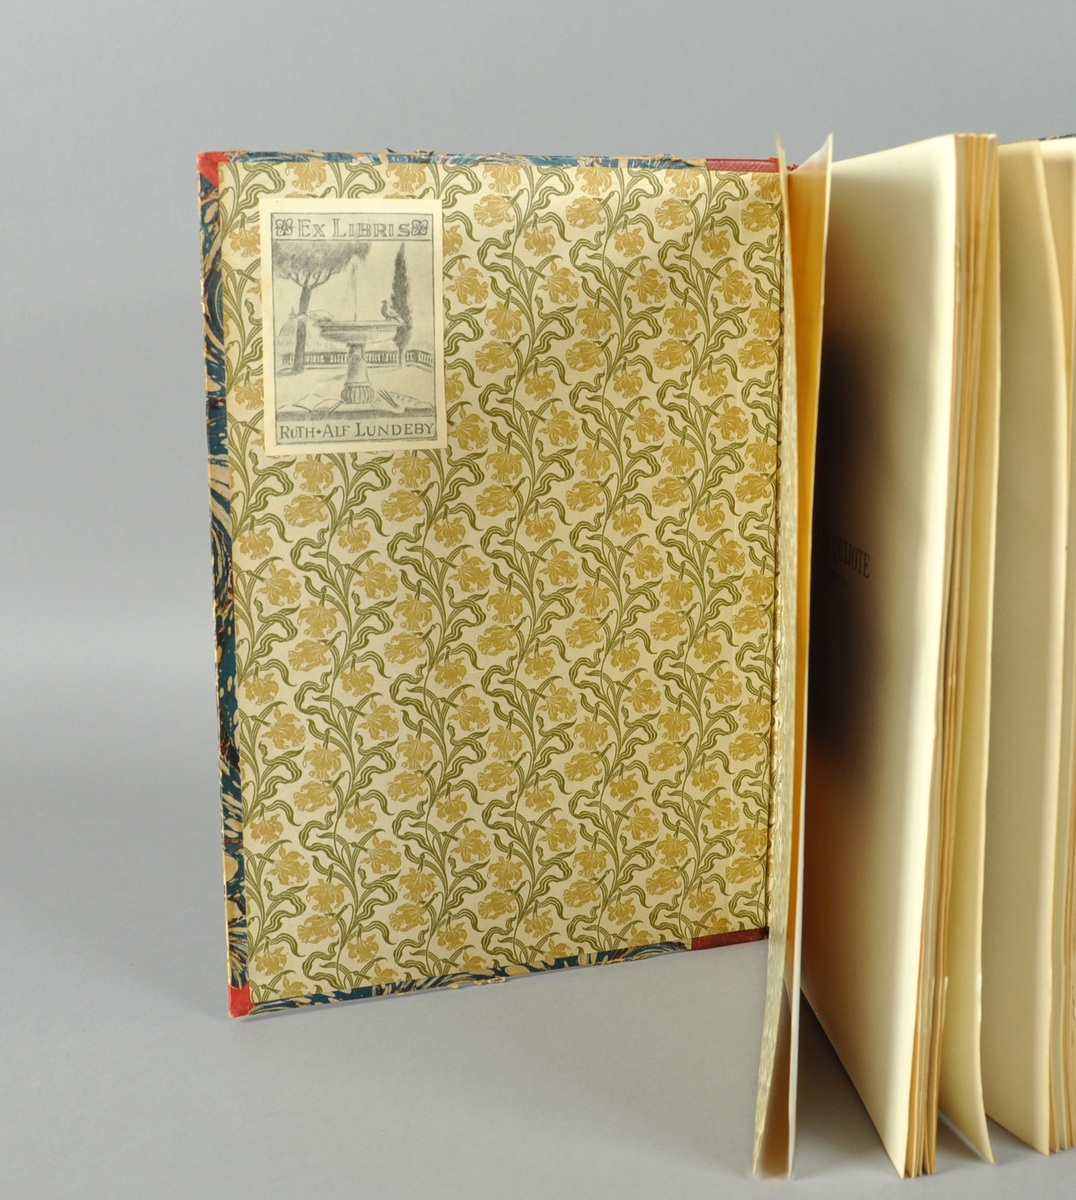 Bok i stort format med skinnrygg. Illustrert av Marstrand, Goya og Daumier.